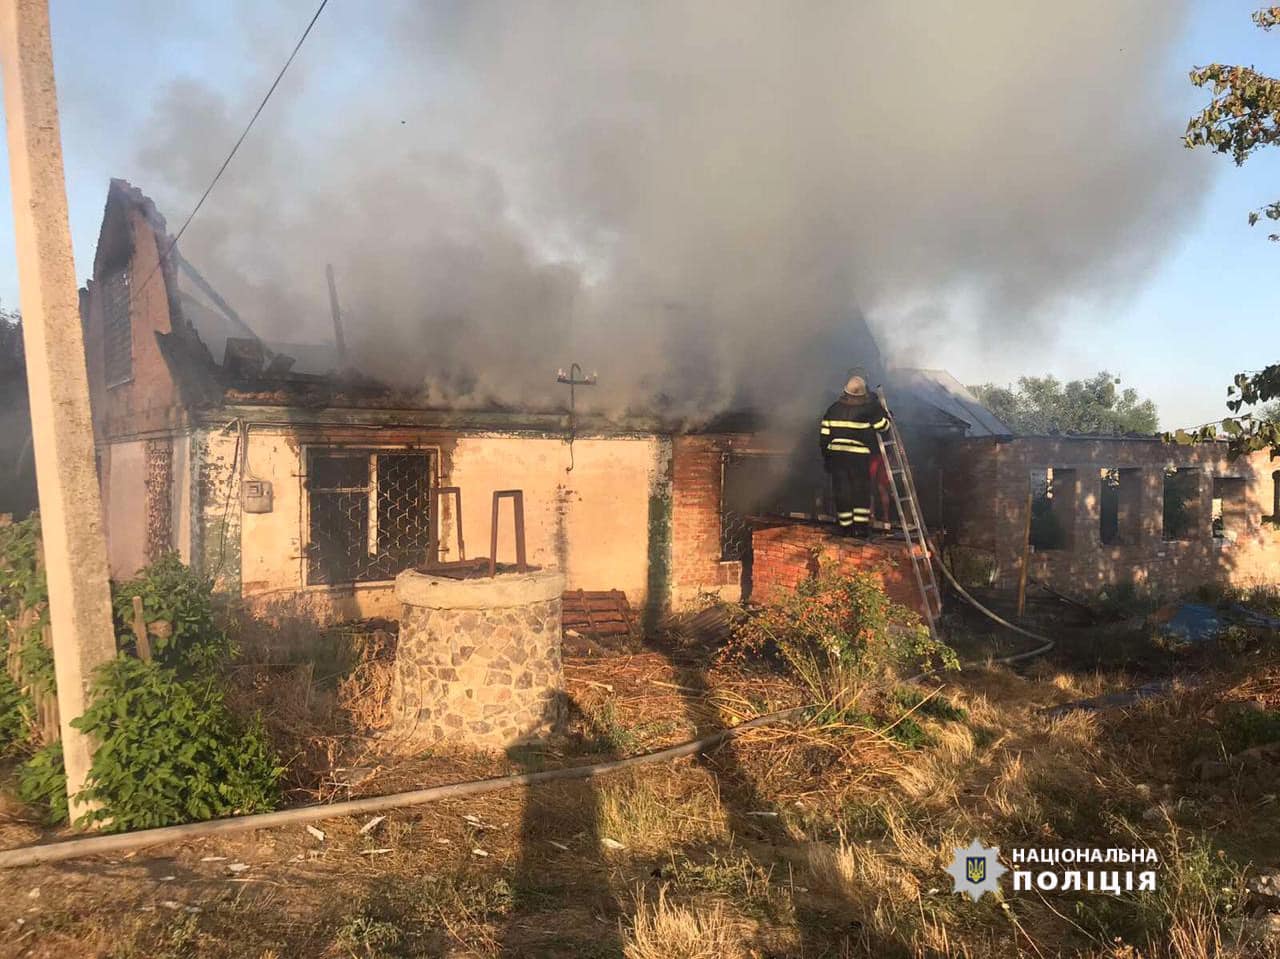 Полиция проверит версию о поджоге дома родителей Васильца, хотя раньше винила в пожаре короткое замыкание. Фото: Полиция